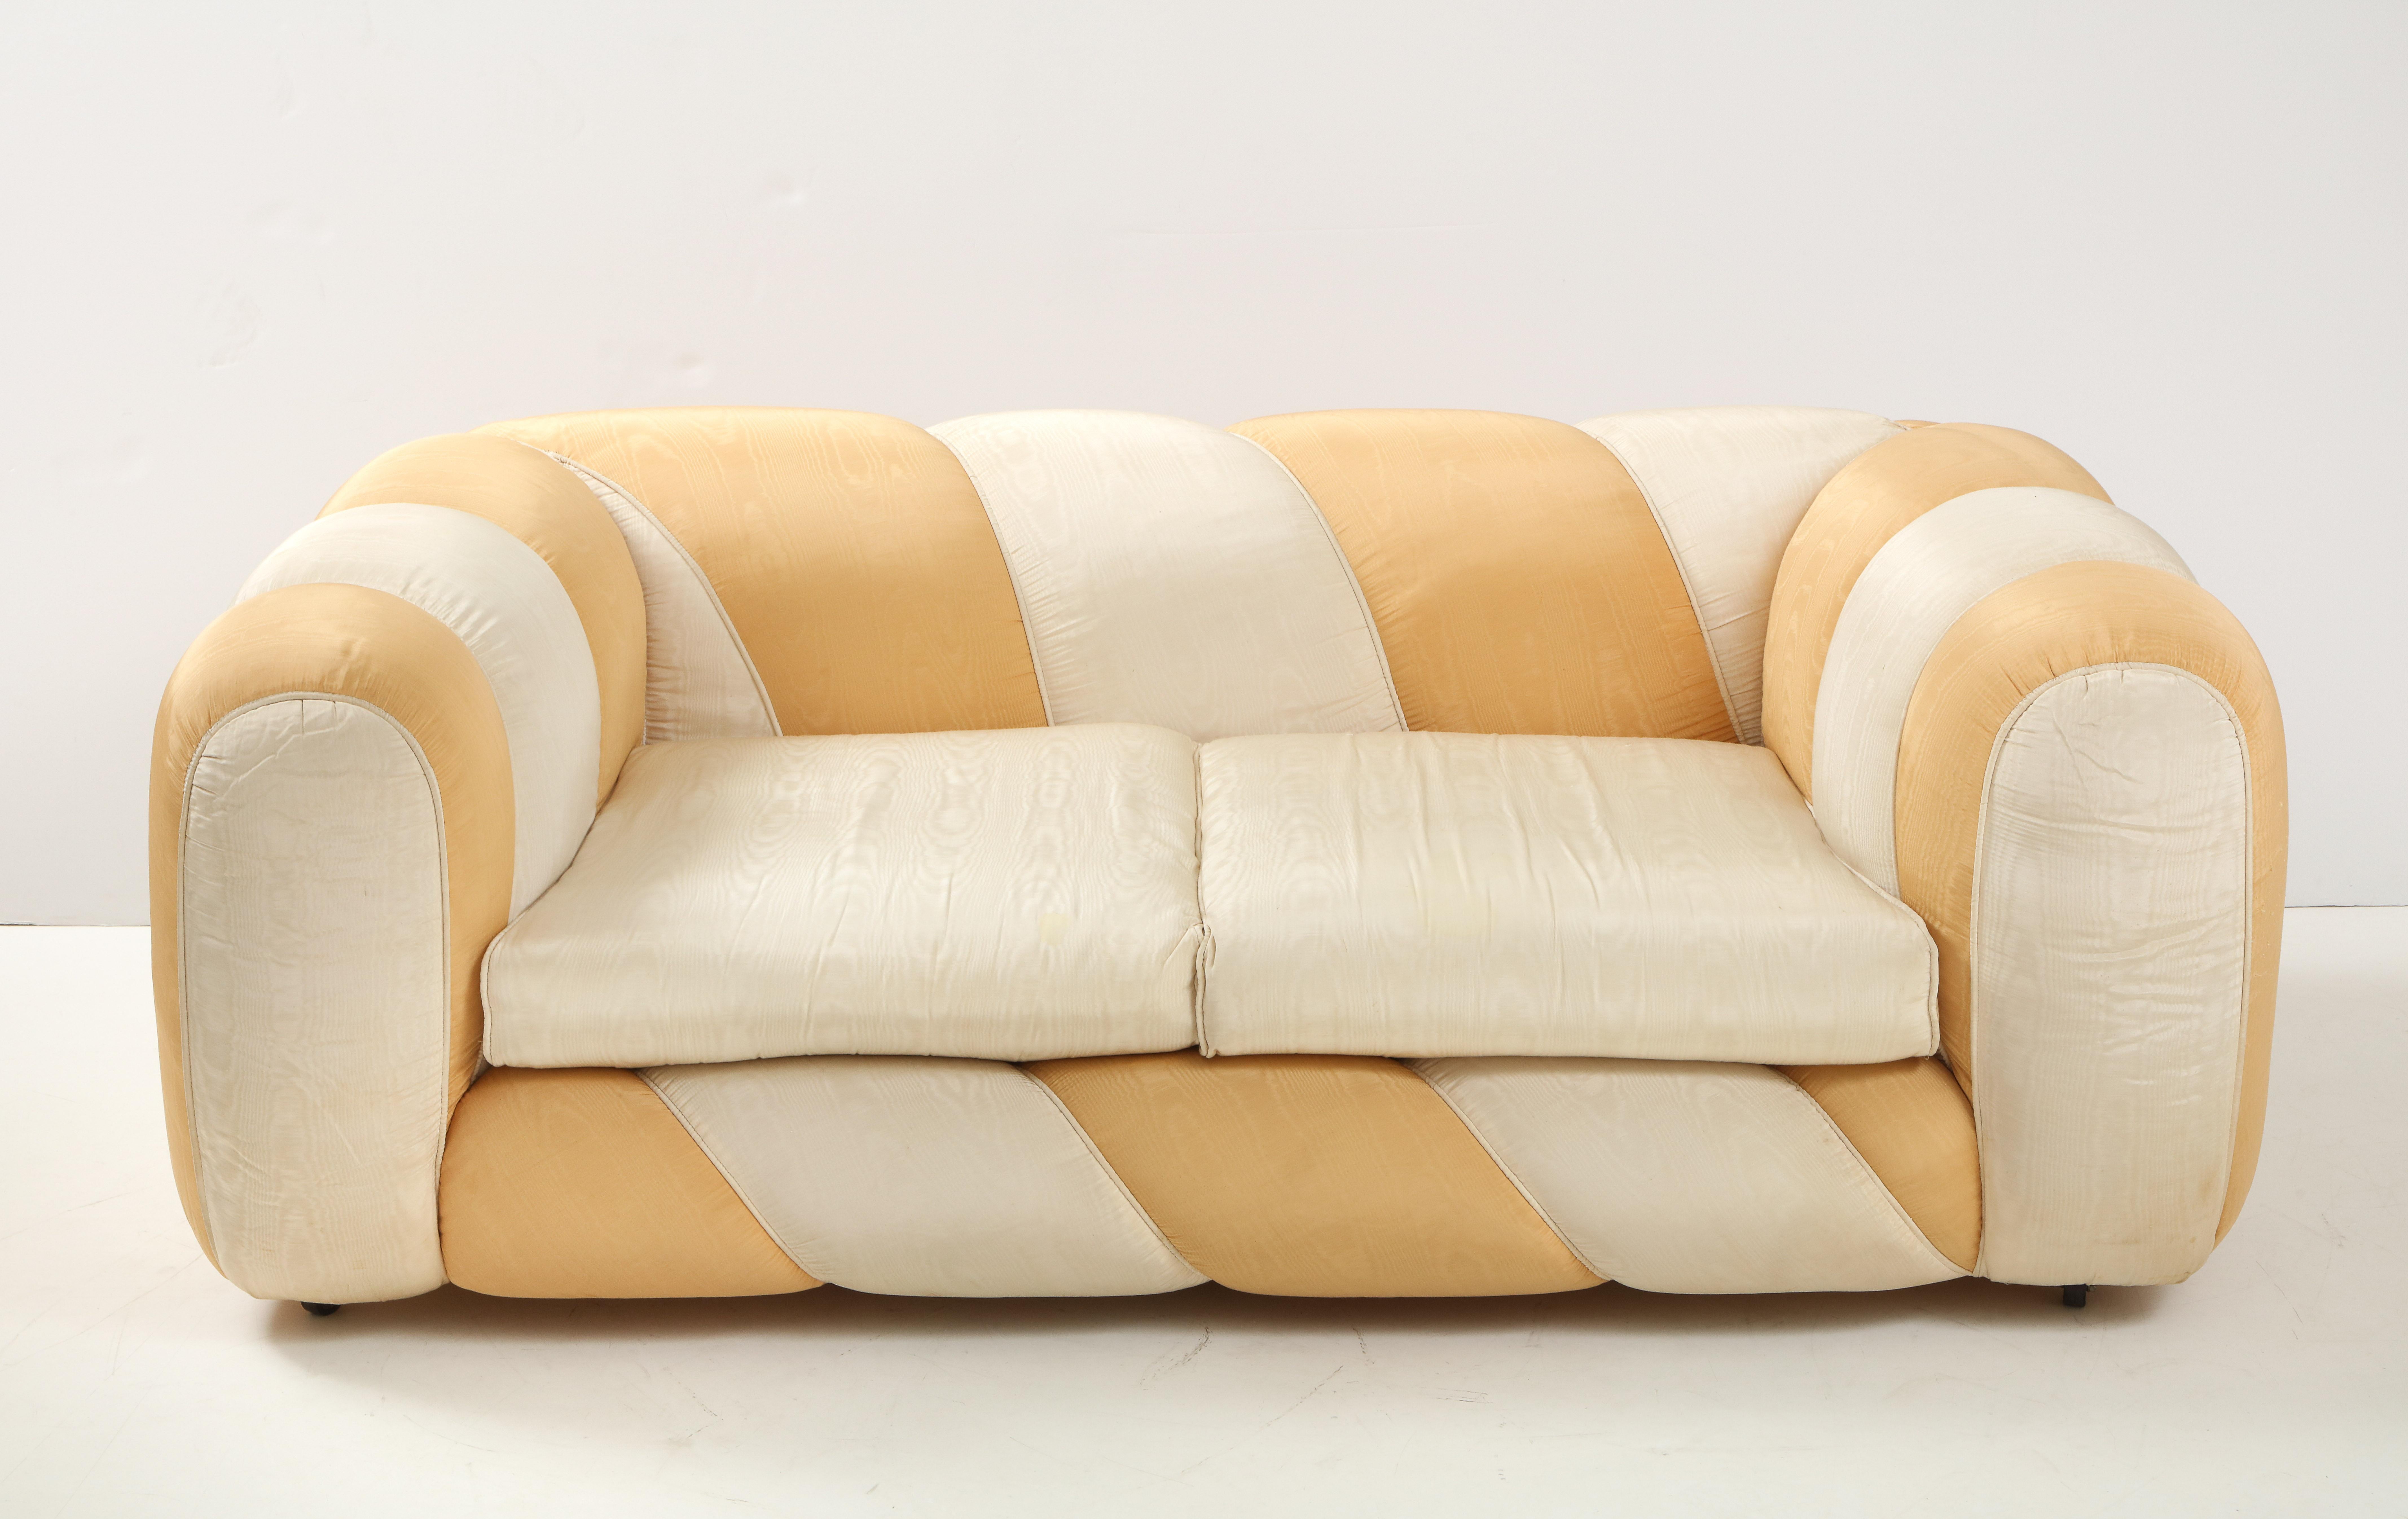 Un vibrant et joyeux canapé deux places Vivai del Sud en tissu moiré de soie or et crème ; tapisserie originale. La forme lisse et sensuelle, combinée à la couleur douce, crée une apparence presque de bonbon. Le design, la fabrication et la forme